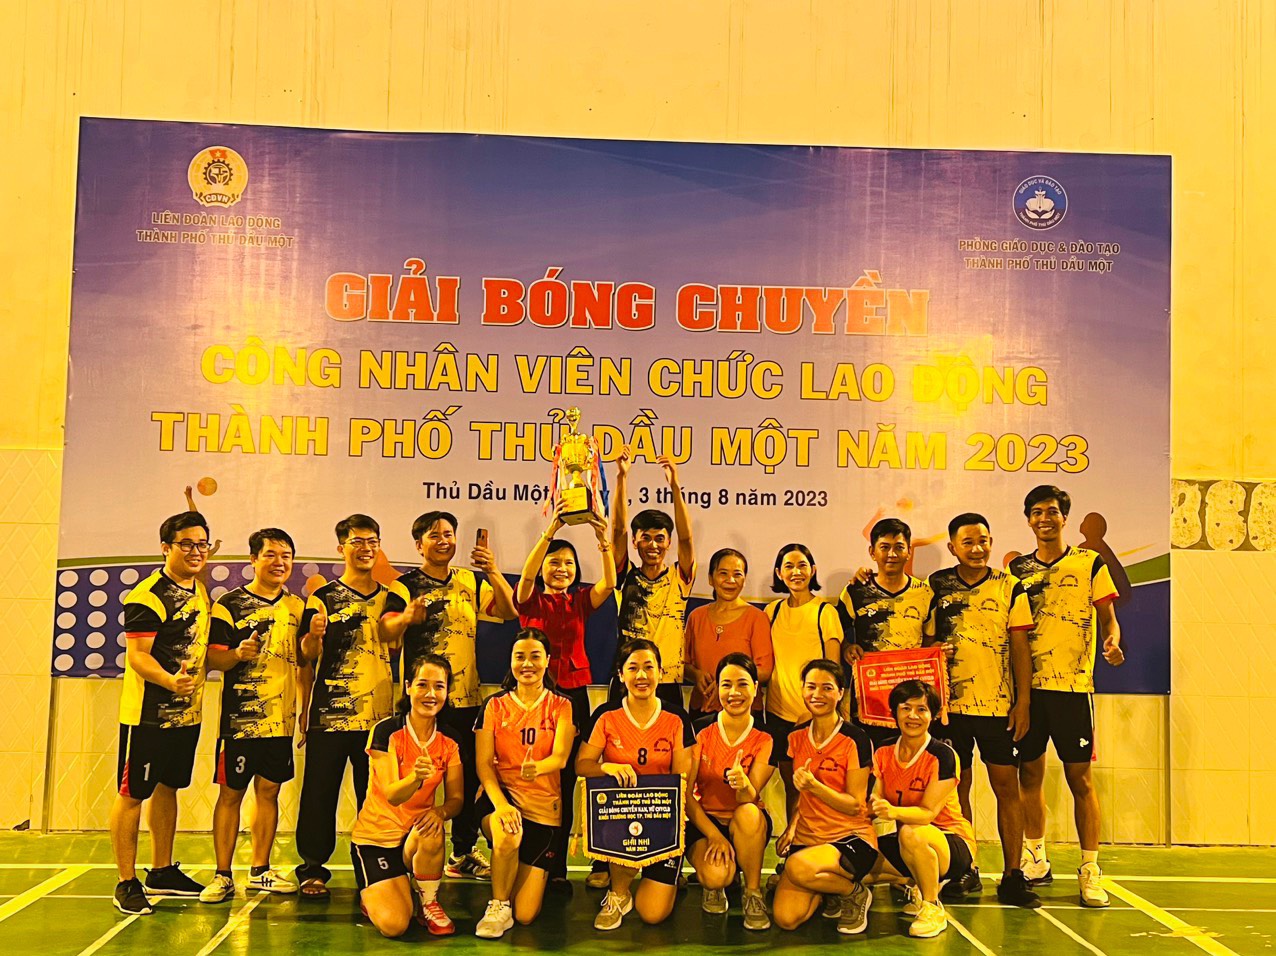 Đoàn viên công đoàn Trường THCS Chu Văn An, thành phố Thủ Dầu Một, tỉnh Bình Dương tiếp tục tham gia “Giải bóng chuyền công nhân viên chức lao động thành phố Thủ Dầu Một năm 2023” và vào vòng chung kết